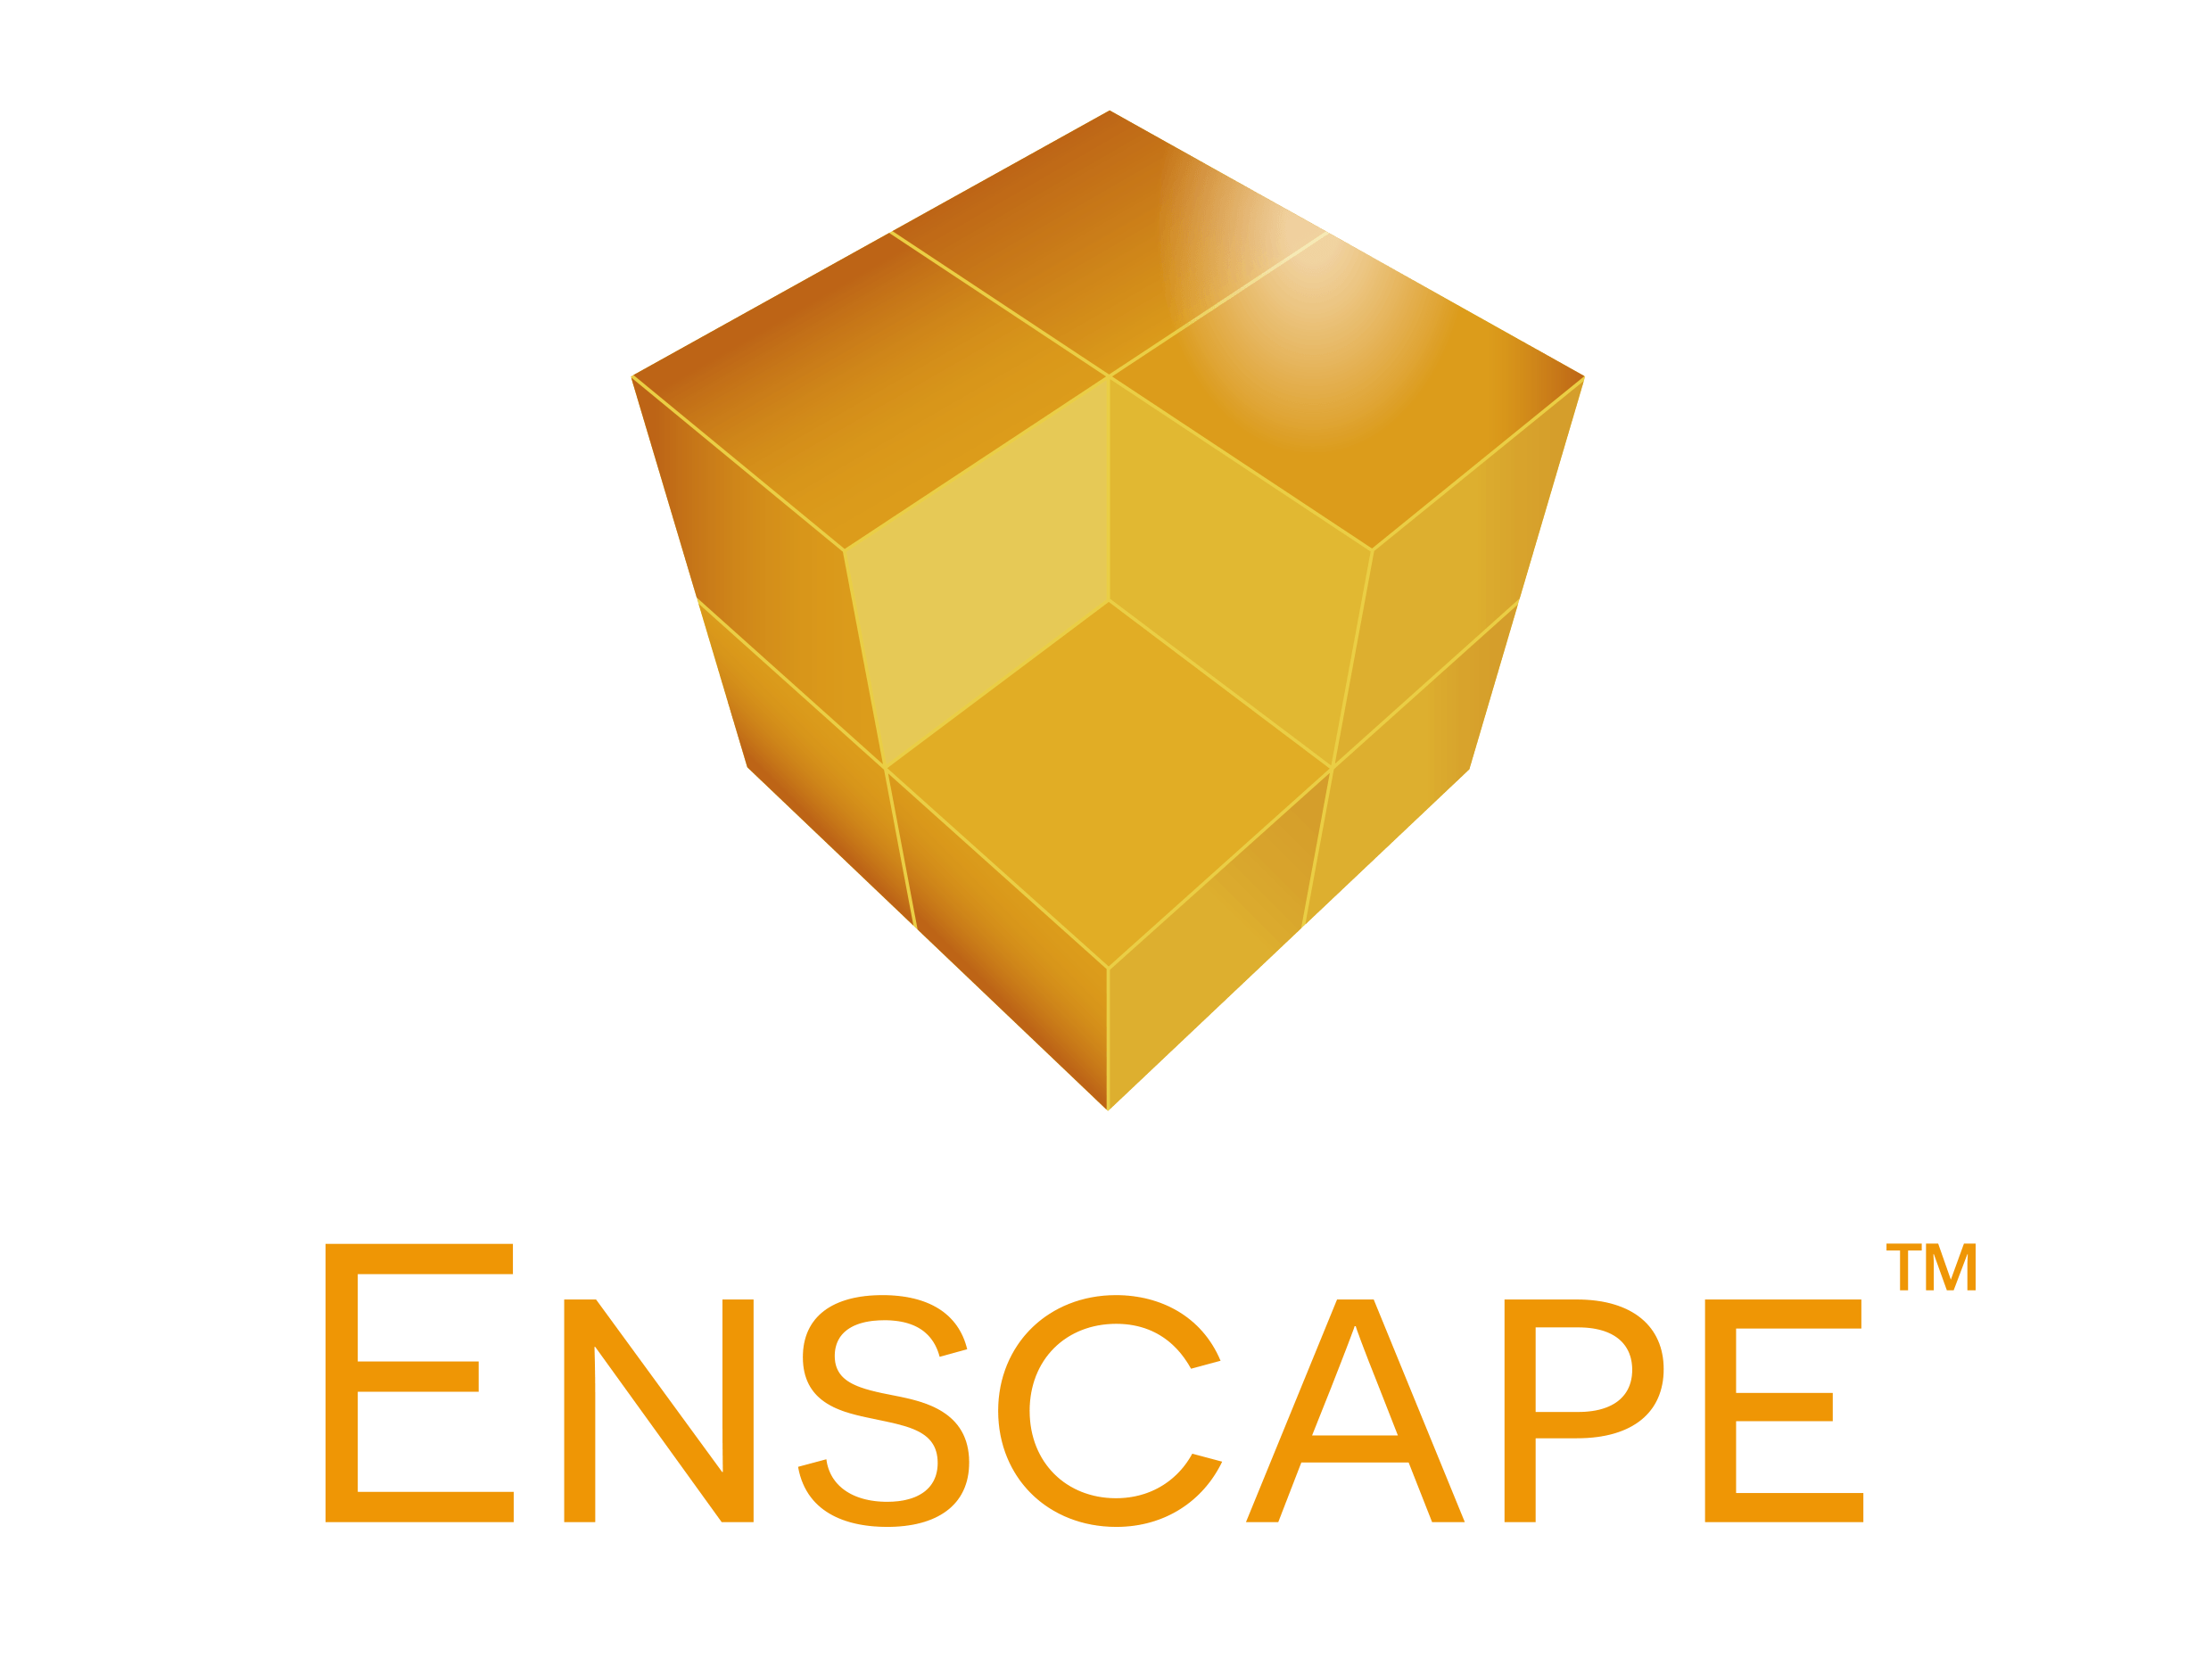 Enscape Logo - Enscape – Enscape – Autodesk Community